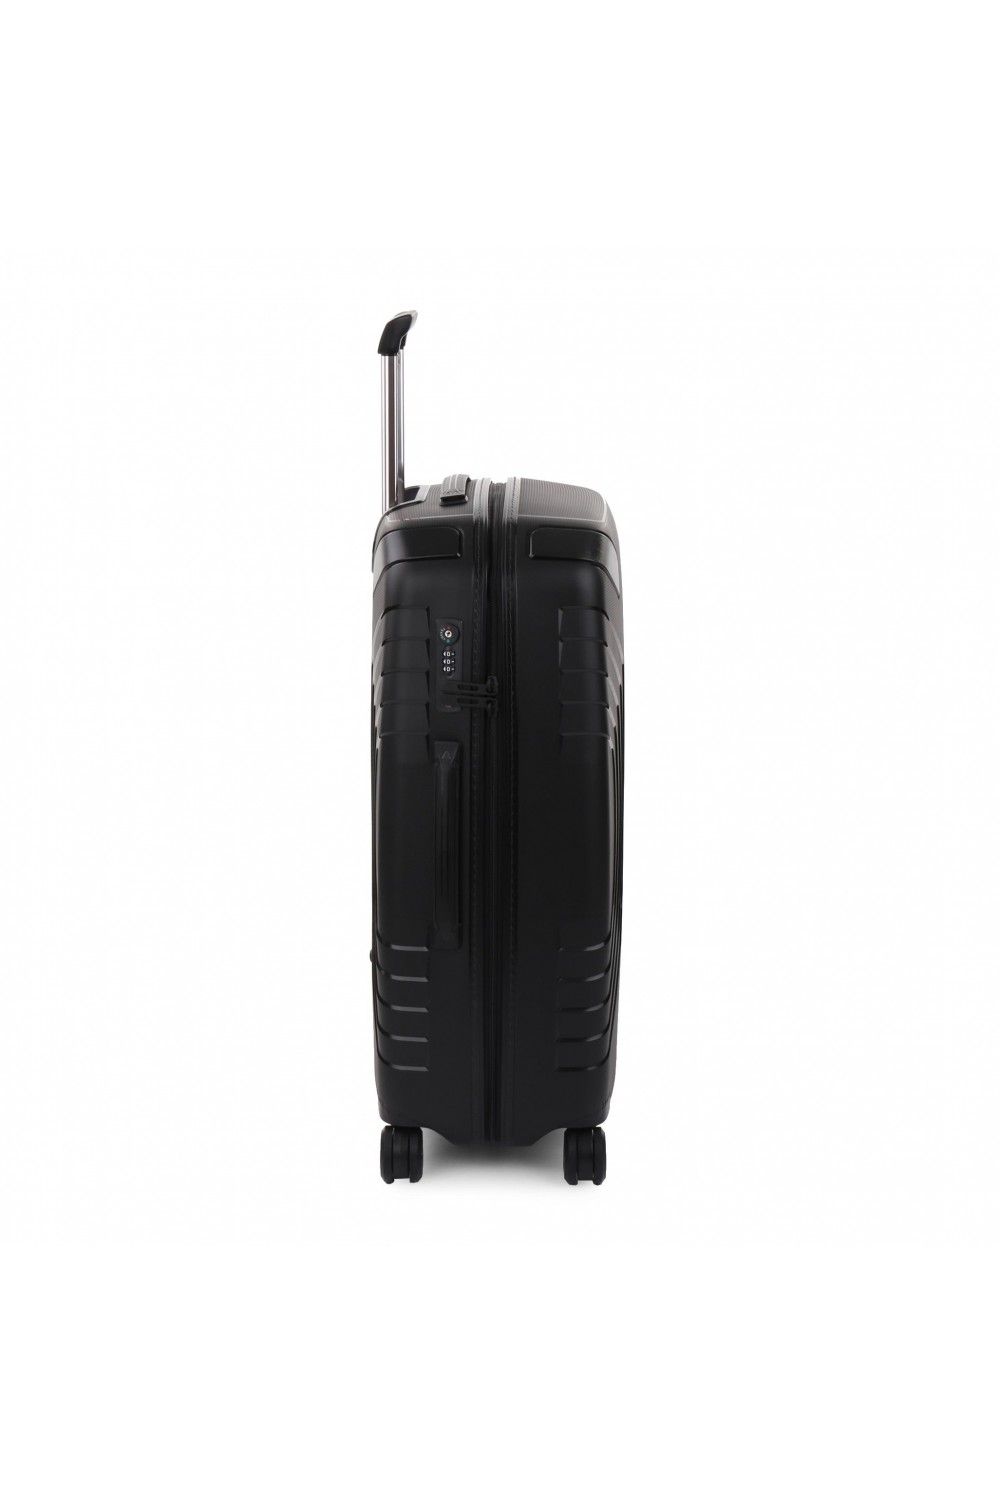 Suitcase Roncato Ypsilon 4 78cm Large 4 wheel expandable